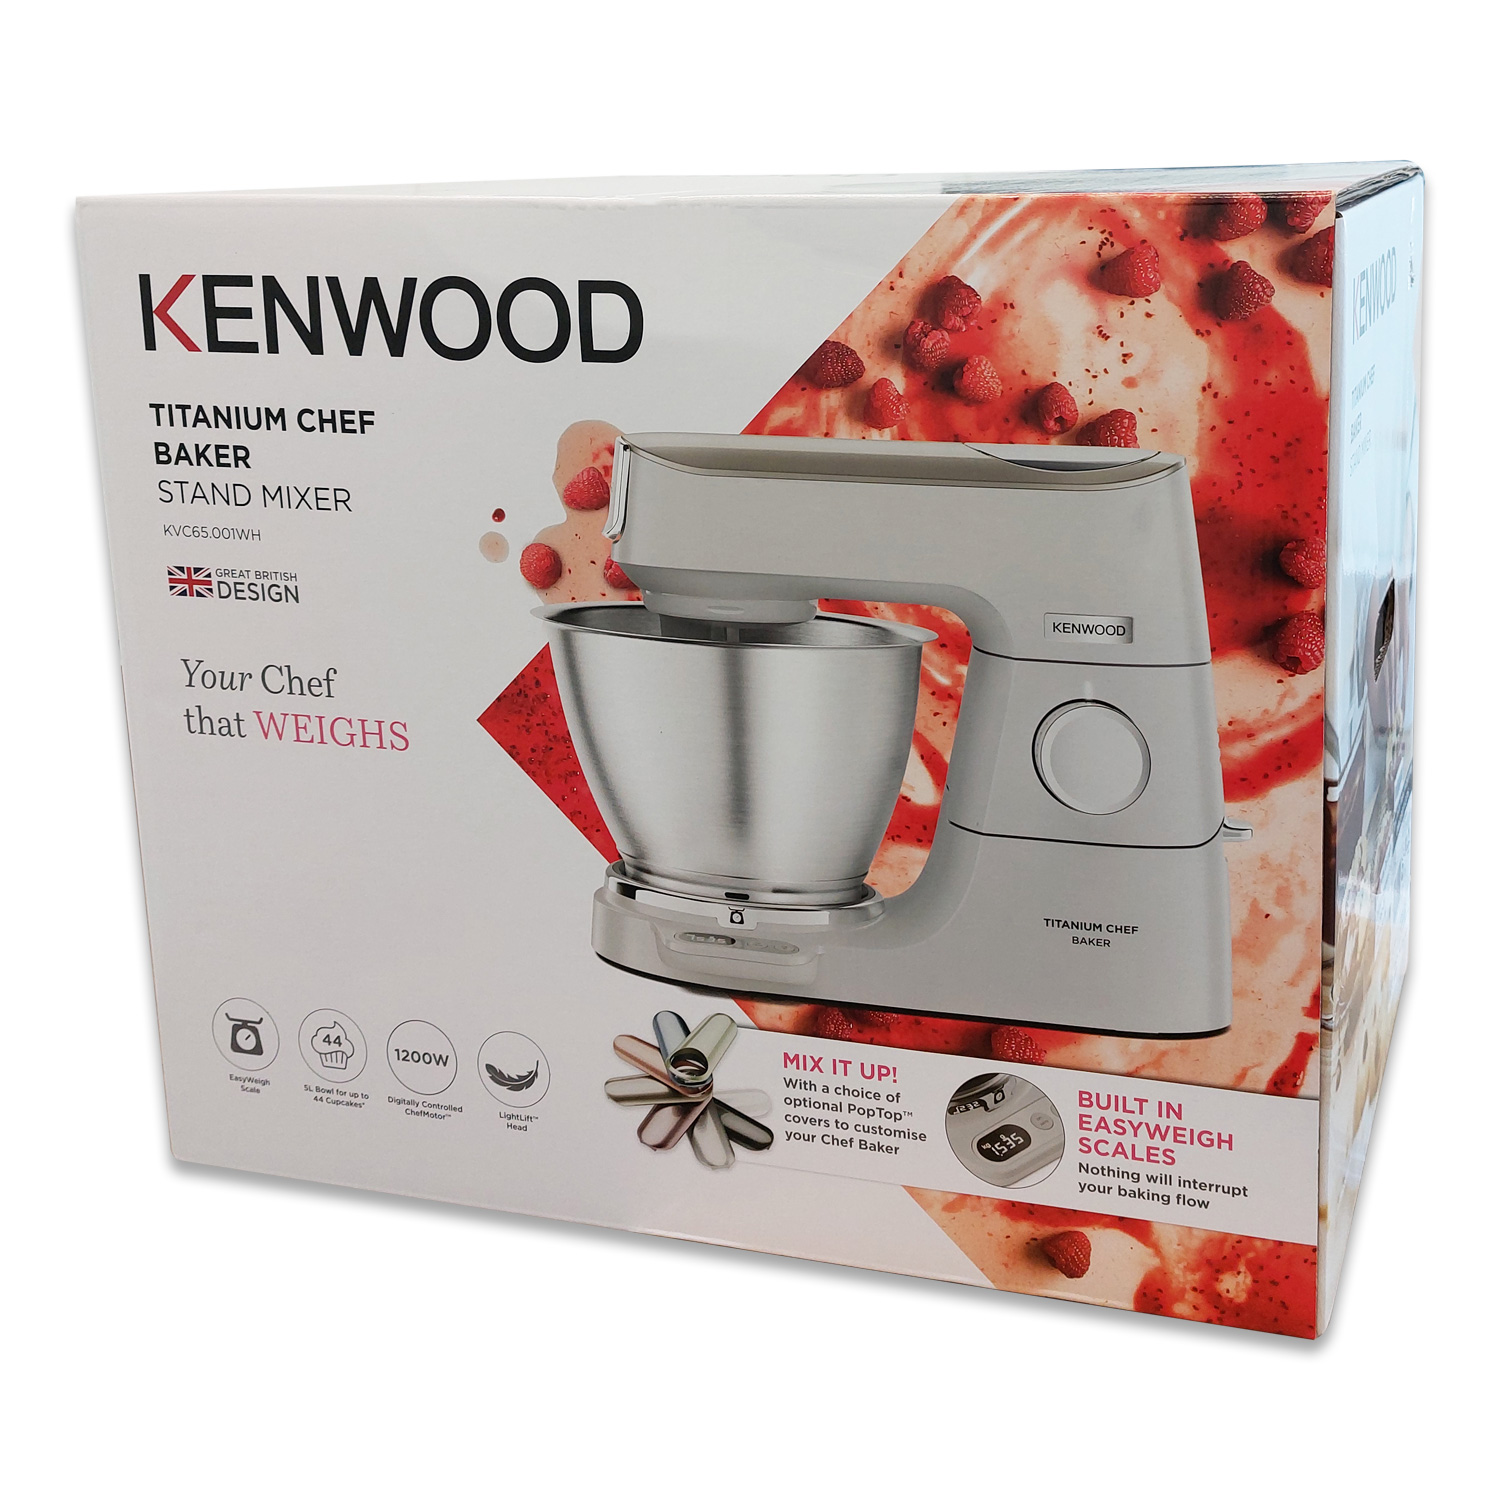 Kenwood KVC65.001WH Titanium Chef Baker Küchenmaschine, weiß